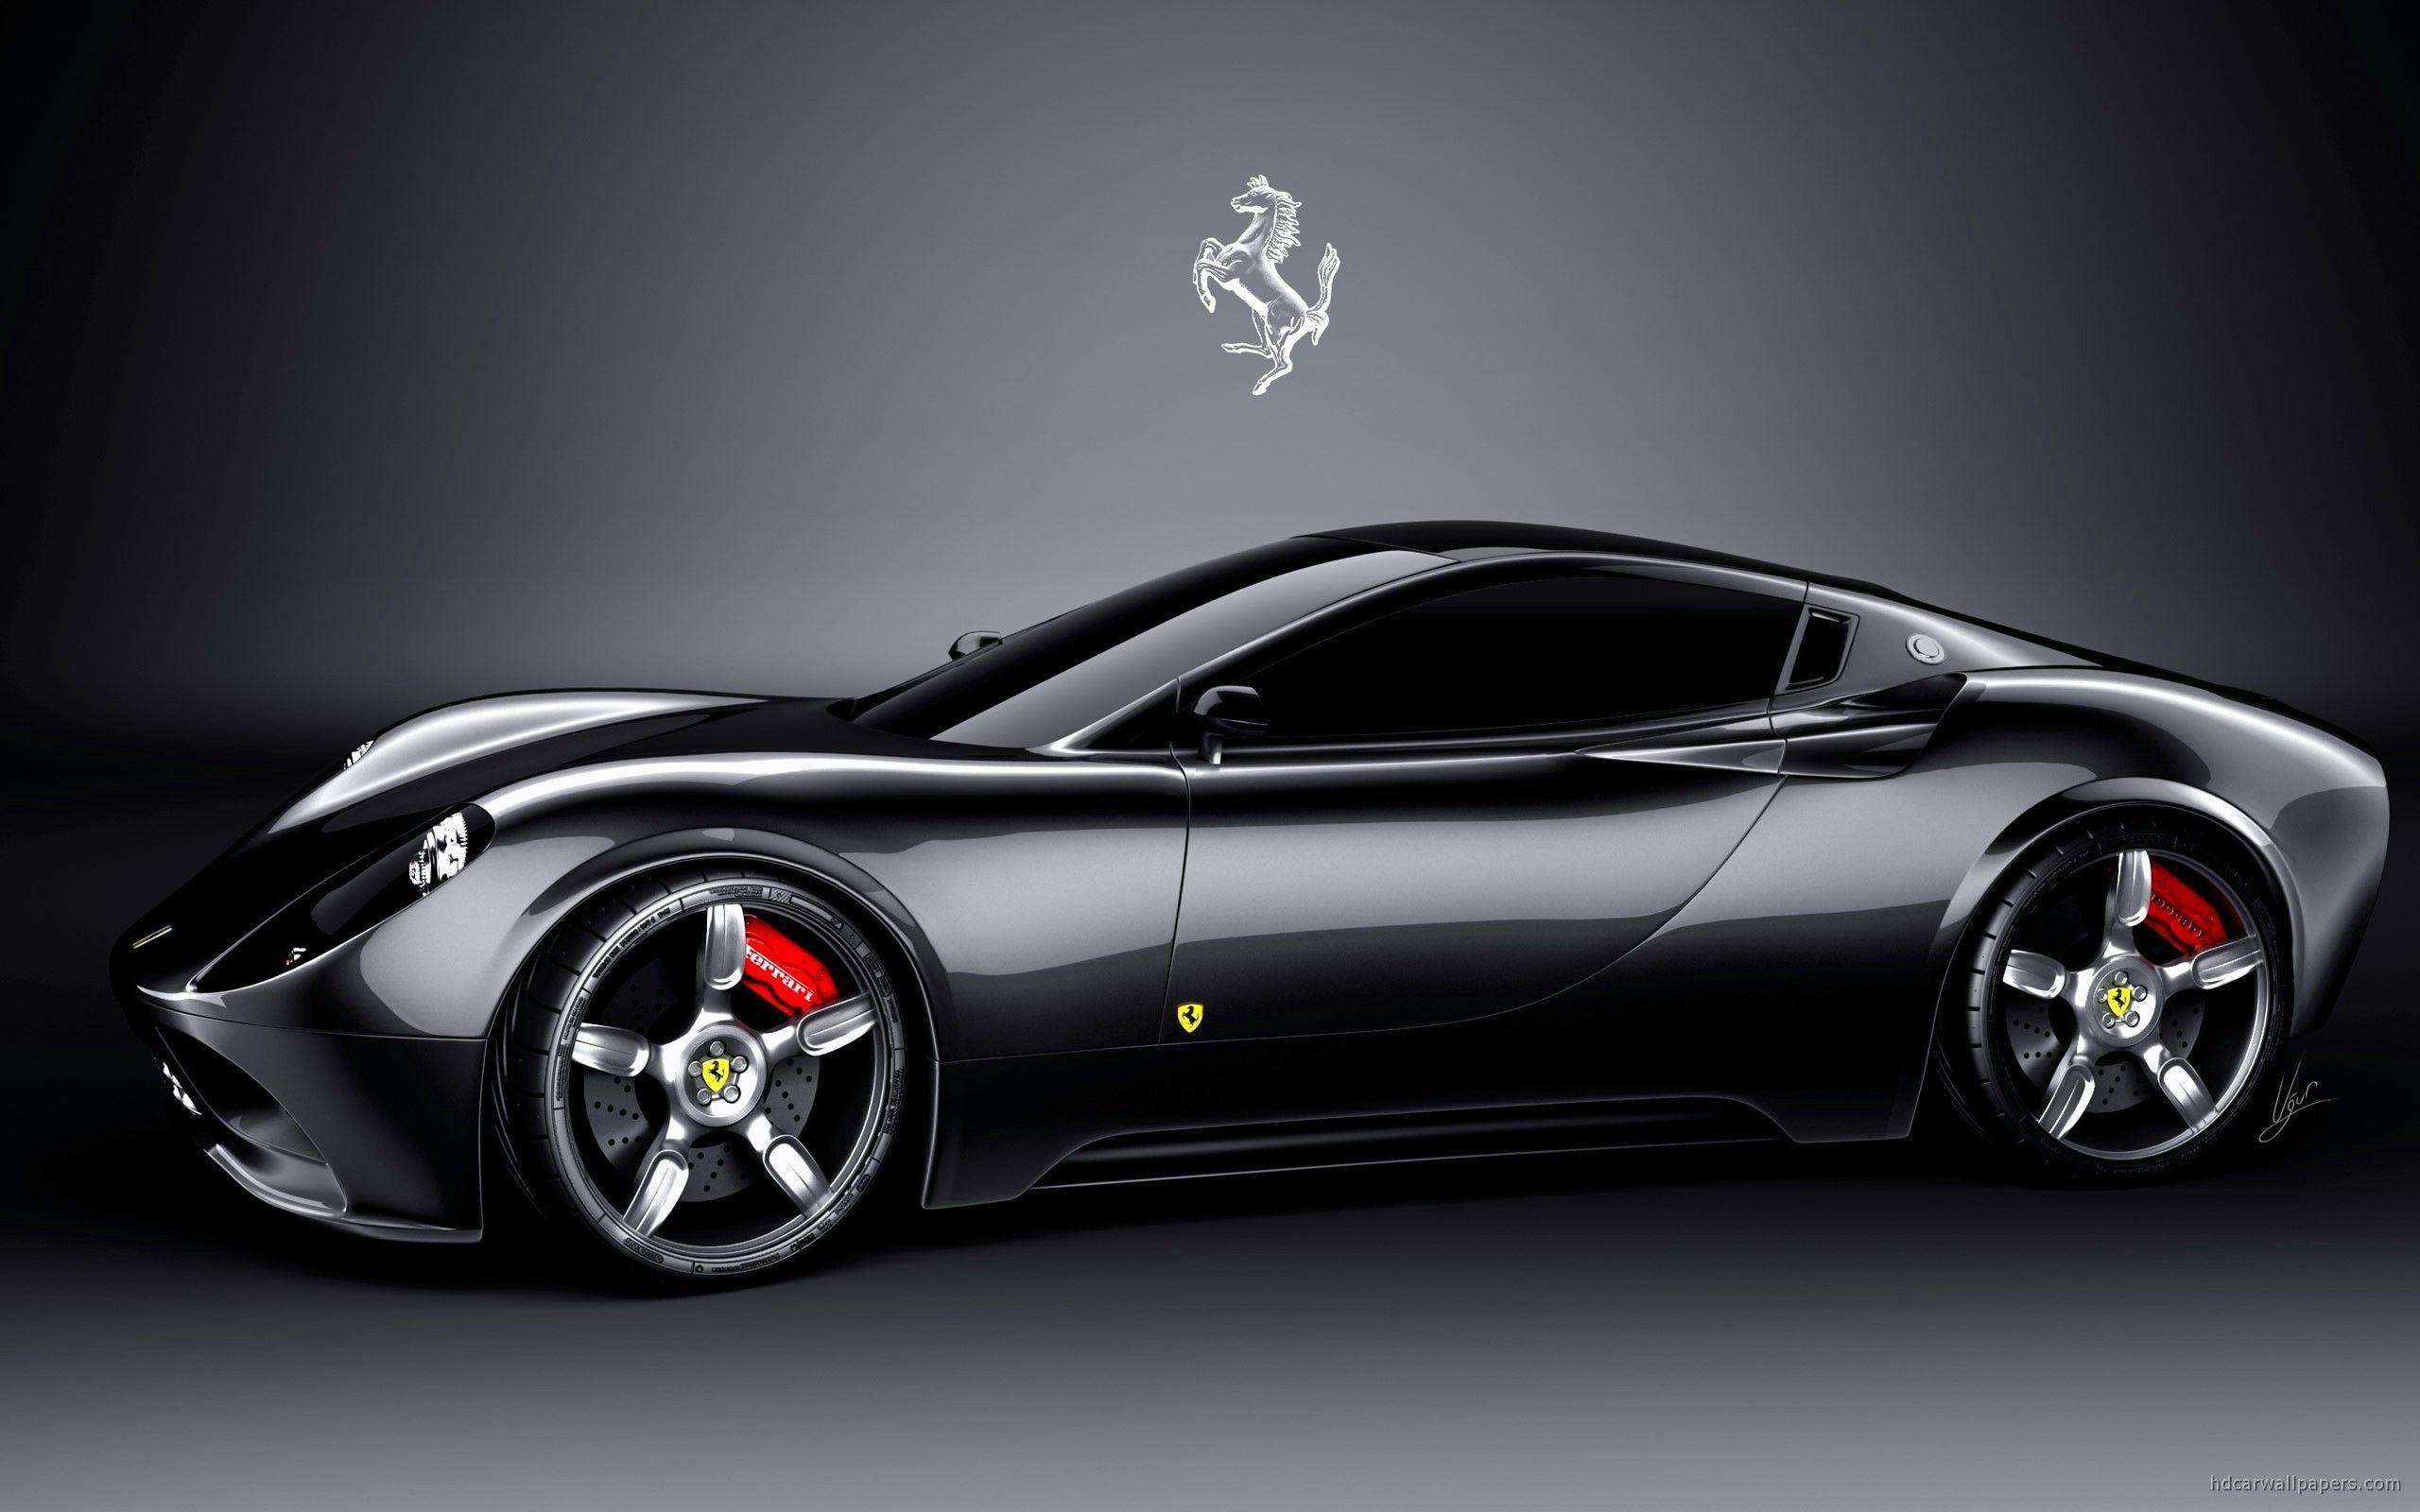 Cool Ferrari Cars Wallpapers Wallpapers